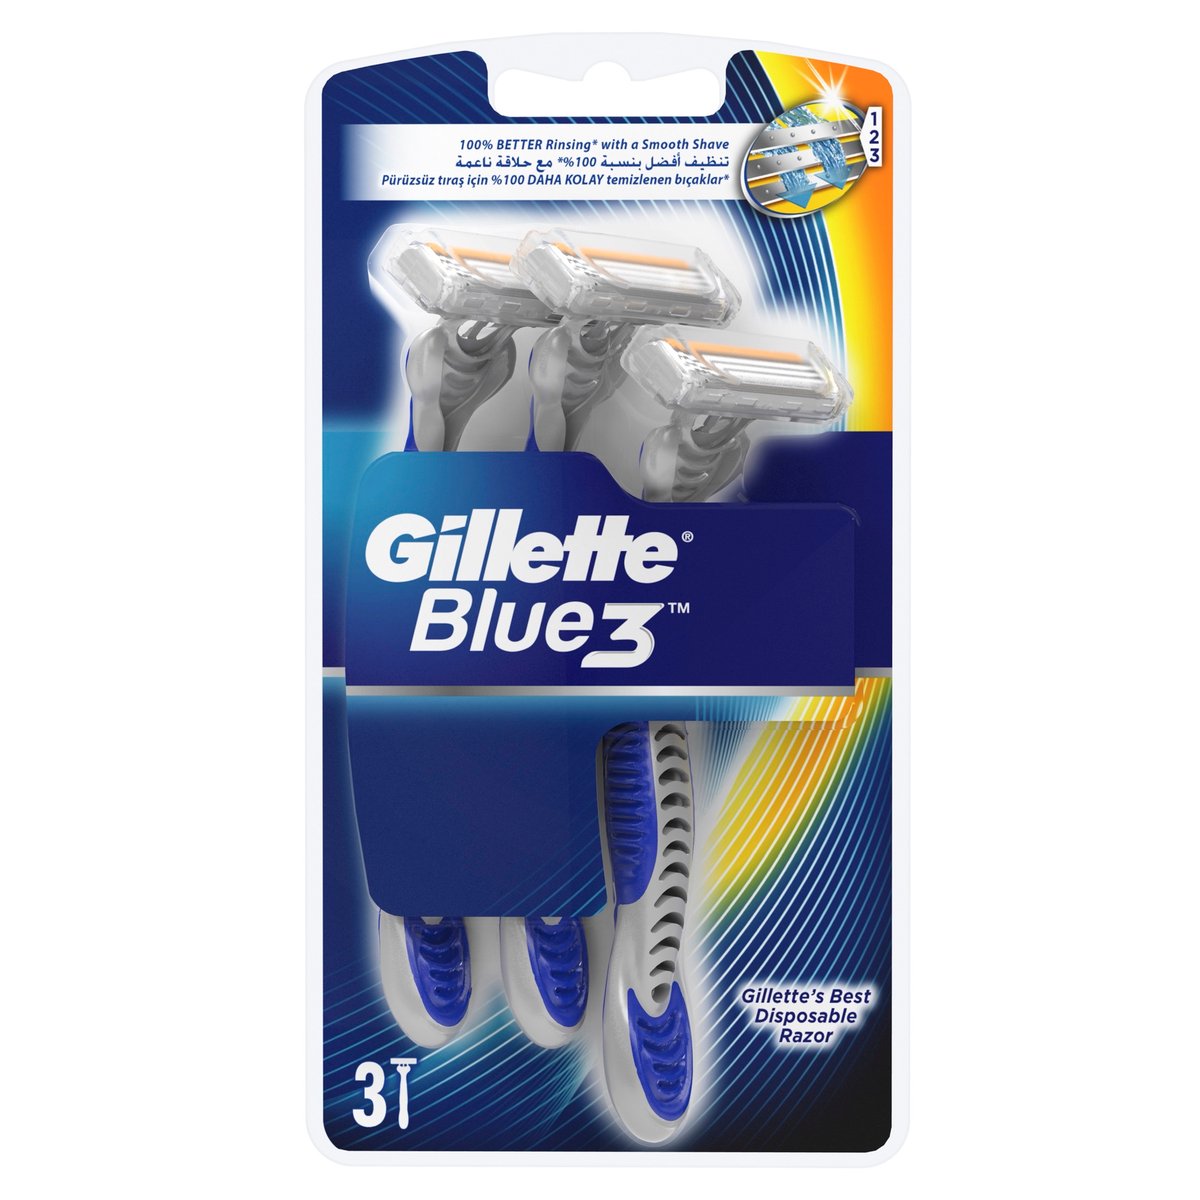 Gillette Blue 3 Disposable Men's Razors 3 pcs